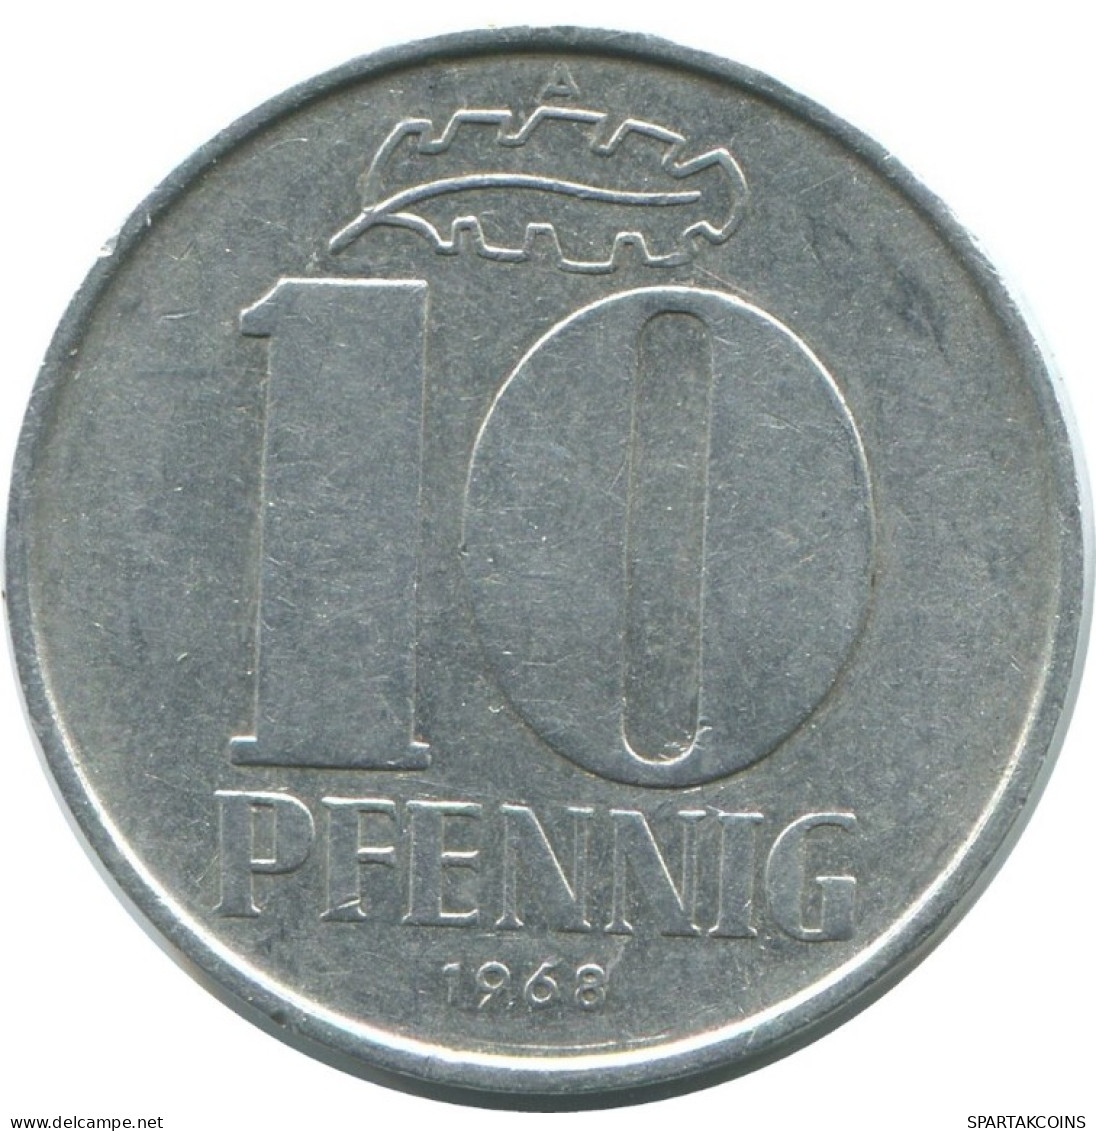 10 PFENNIG 1968 A DDR EAST ALEMANIA Moneda GERMANY #AE100.E.A - 10 Pfennig